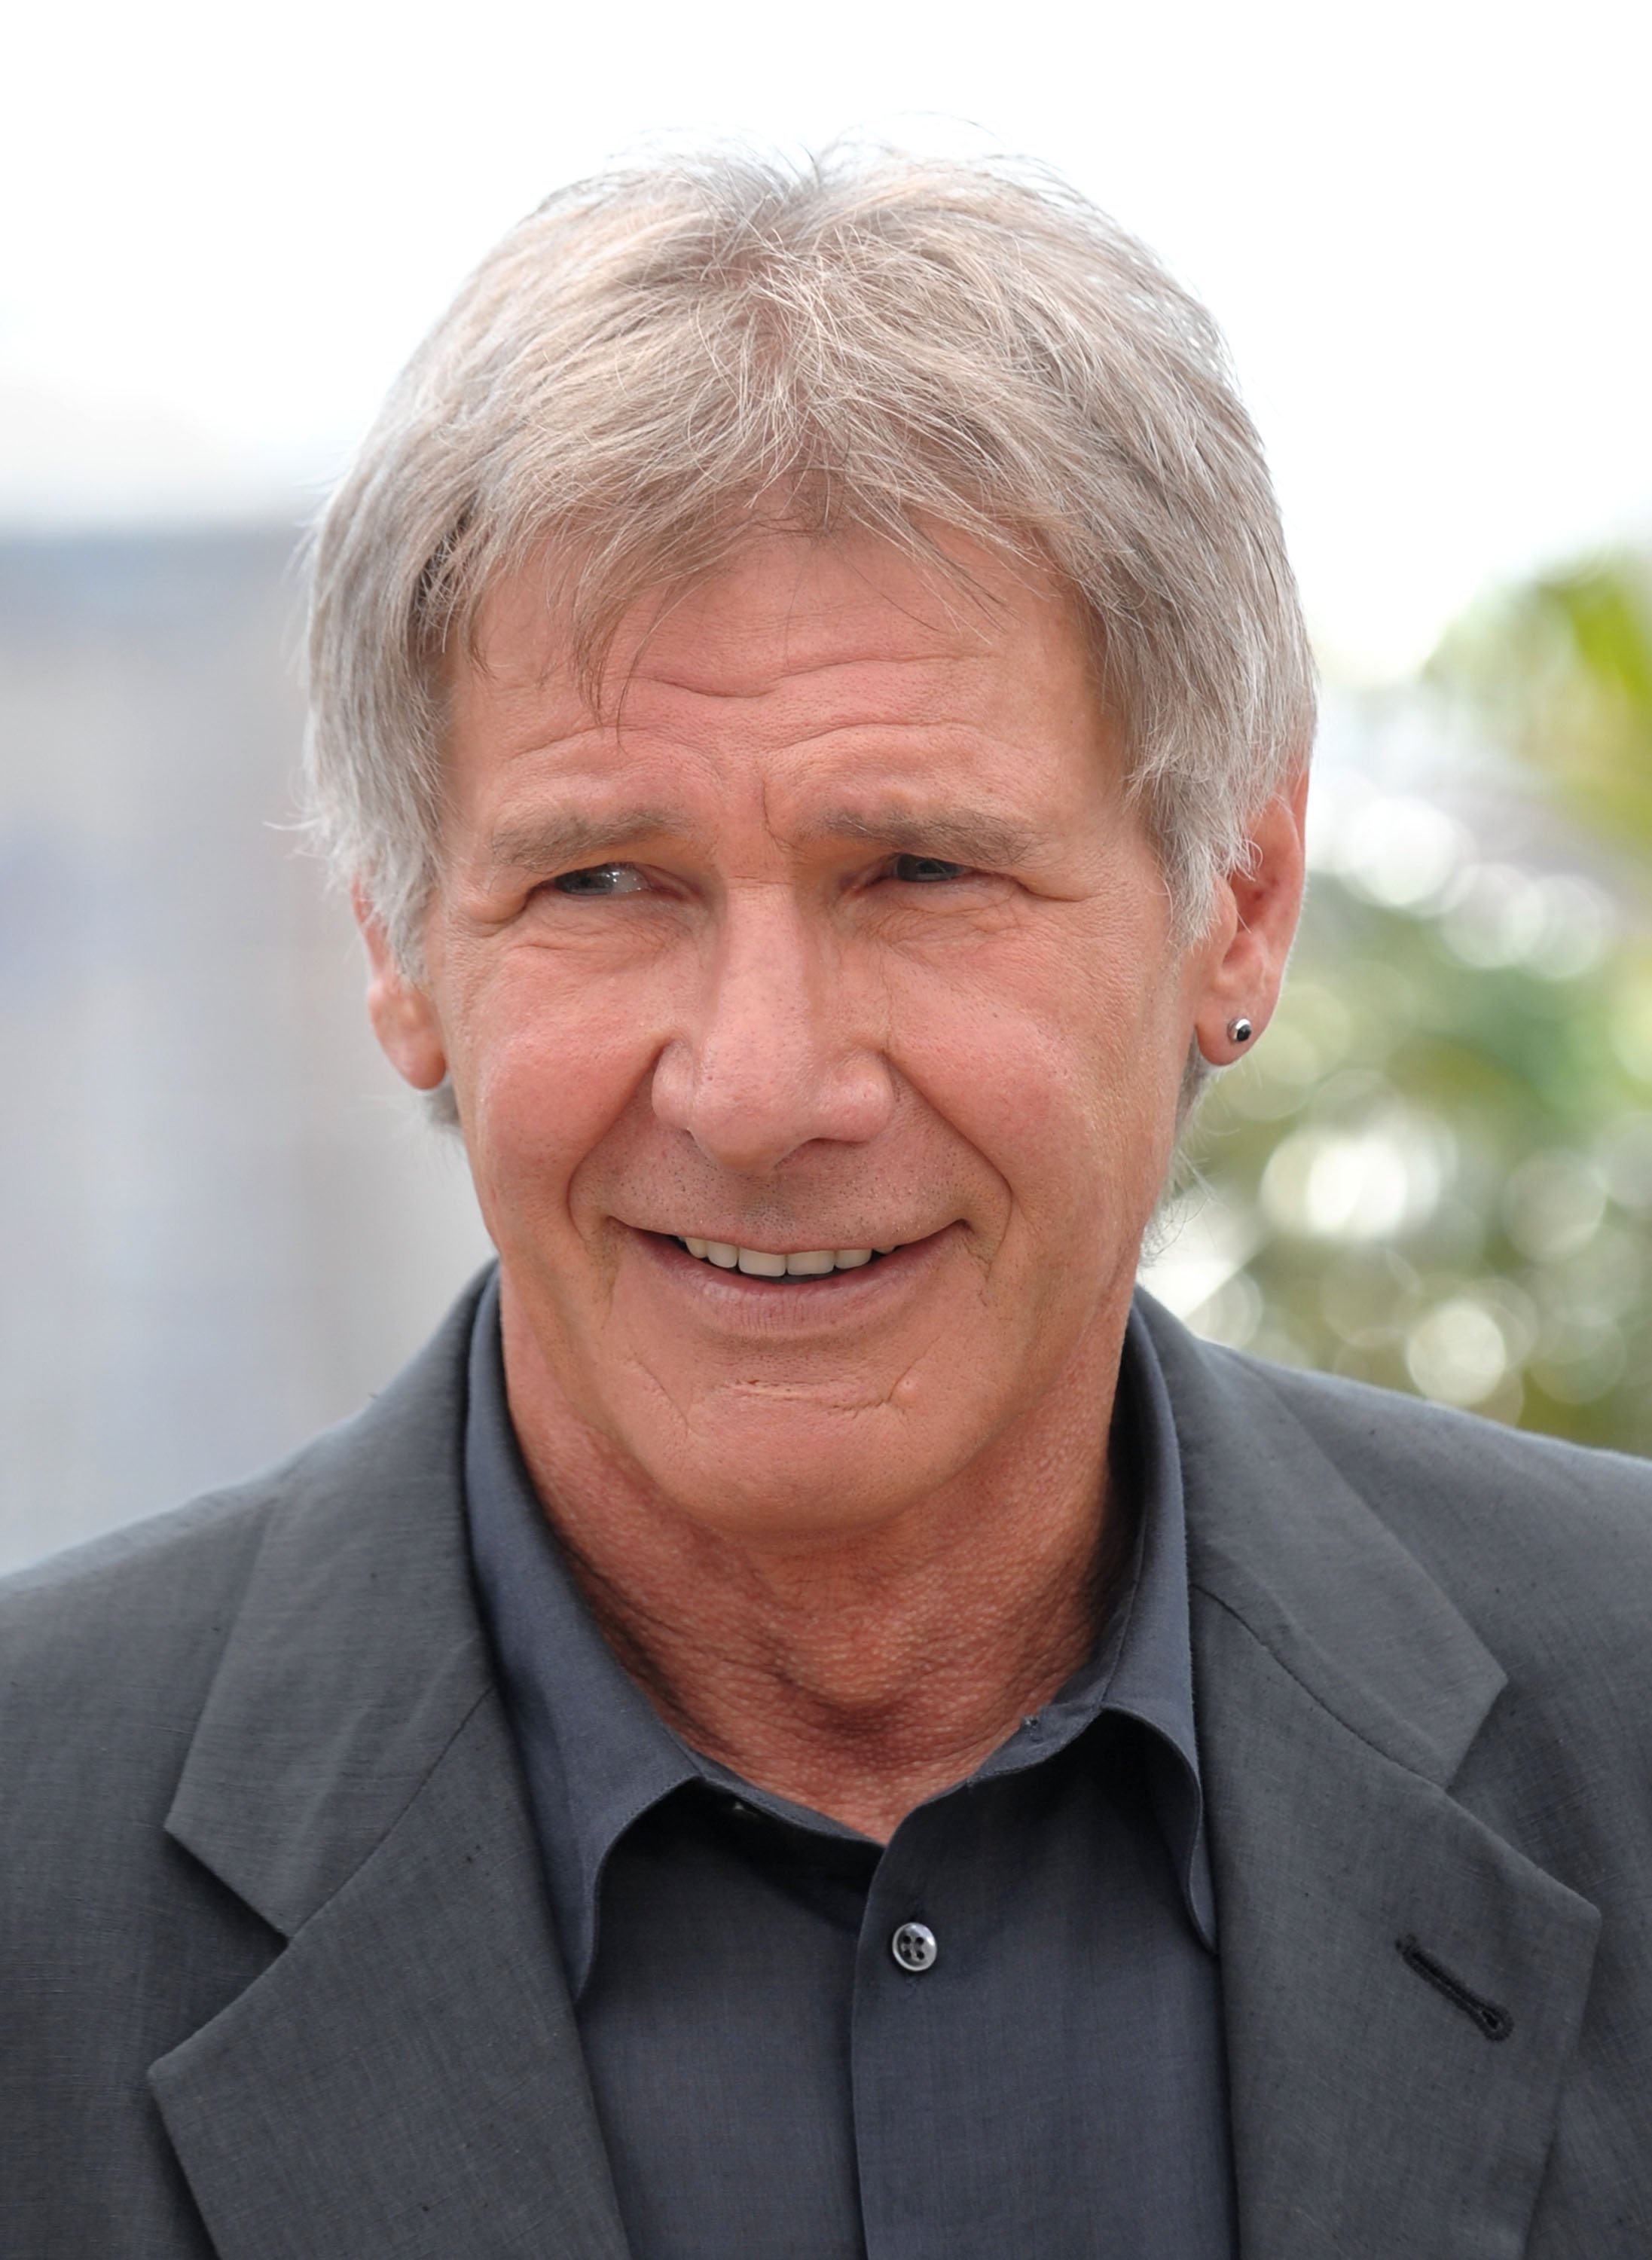 Harrison Ford au Festival de Cannes en 2003 | Source : Getty Images